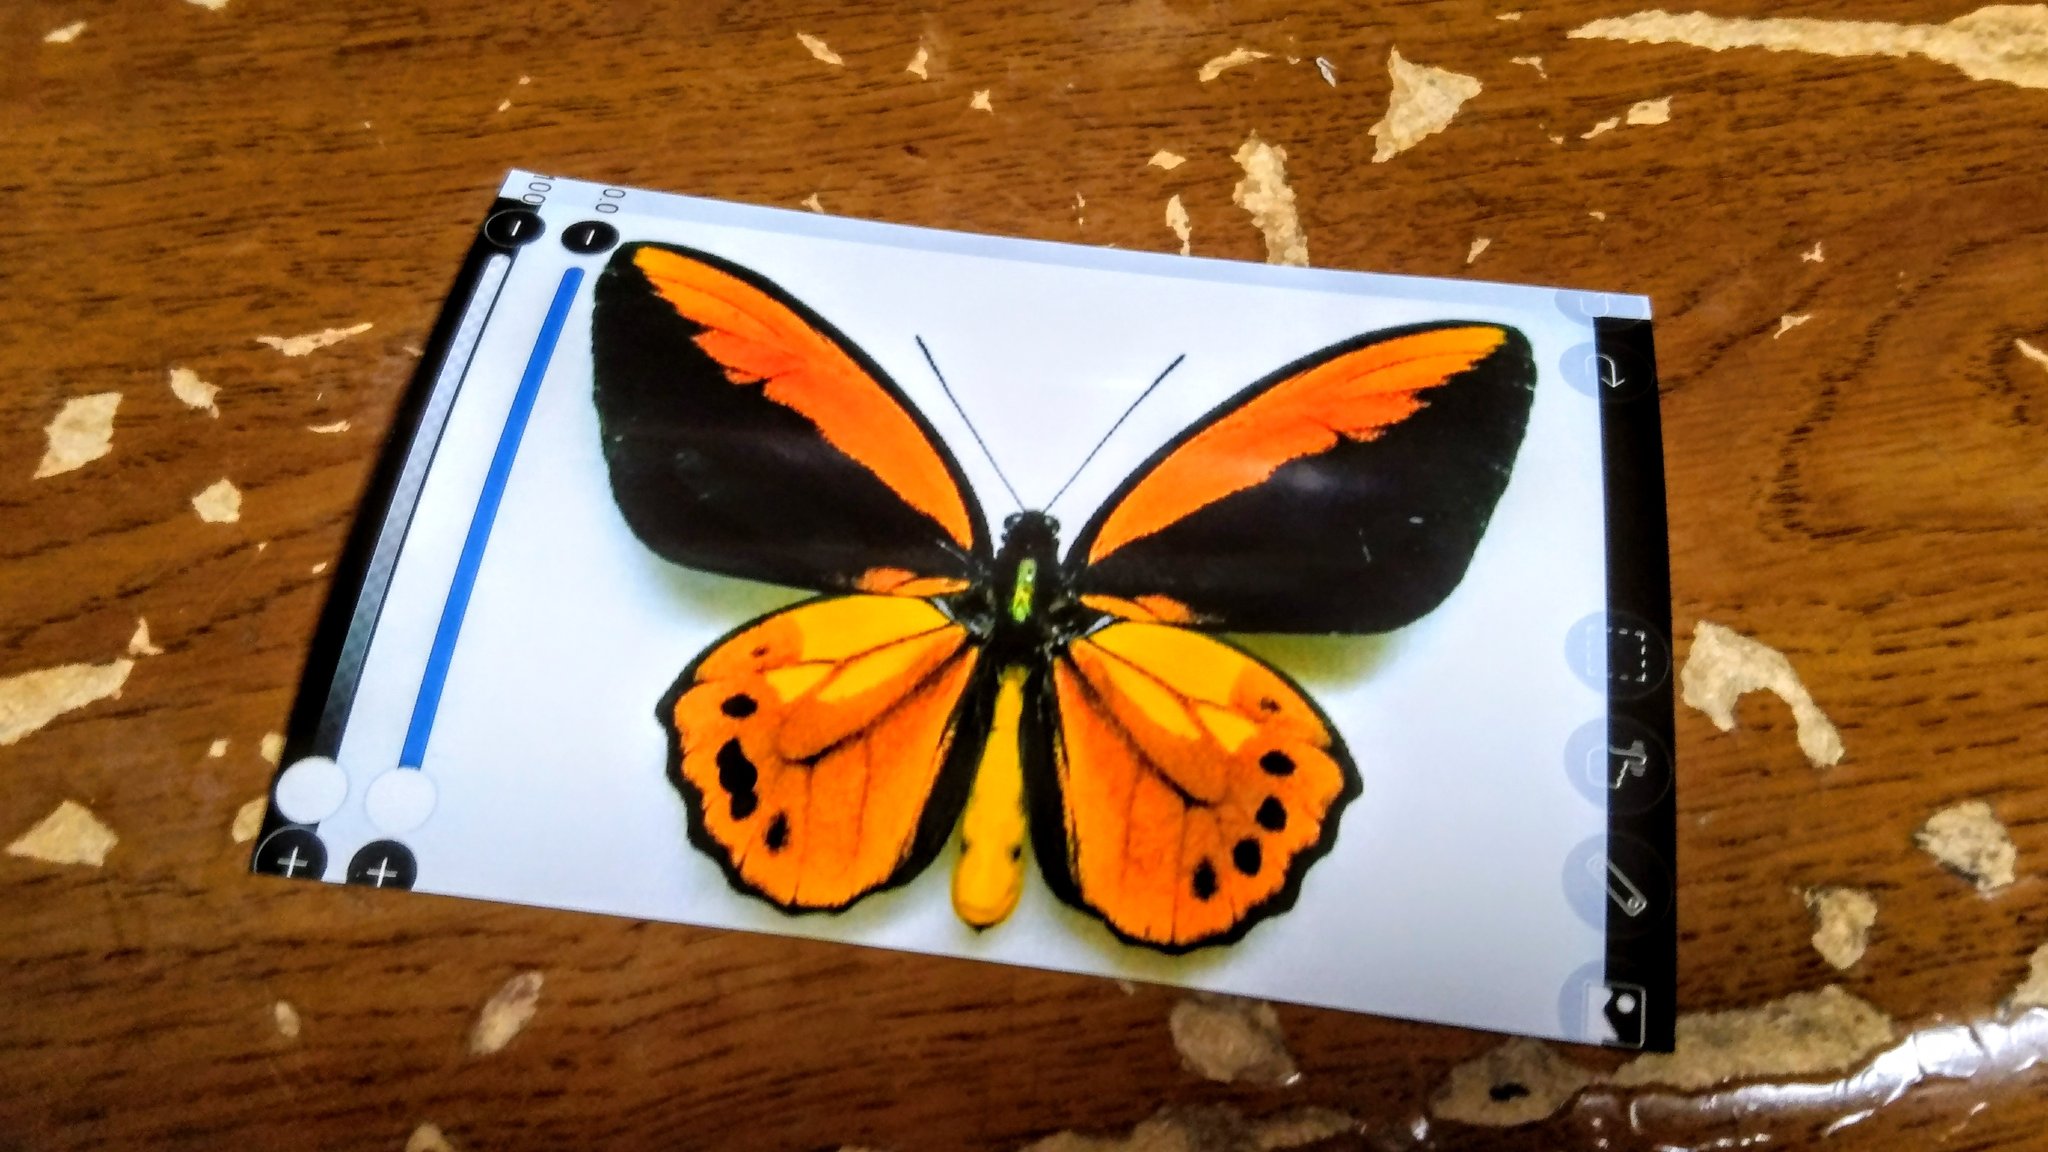 佑季 蝶の標本 フェイク の作り方 用意するもの 1 好きな蝶の写真 今回の写真はコンビニでプリントアウトしたもの 30円 2 割り箸 無料 3 百均 キャンドゥ で購入した標本ケース 4 ボンド 家にあったもの 好きな蝶の写真を用意します T Co